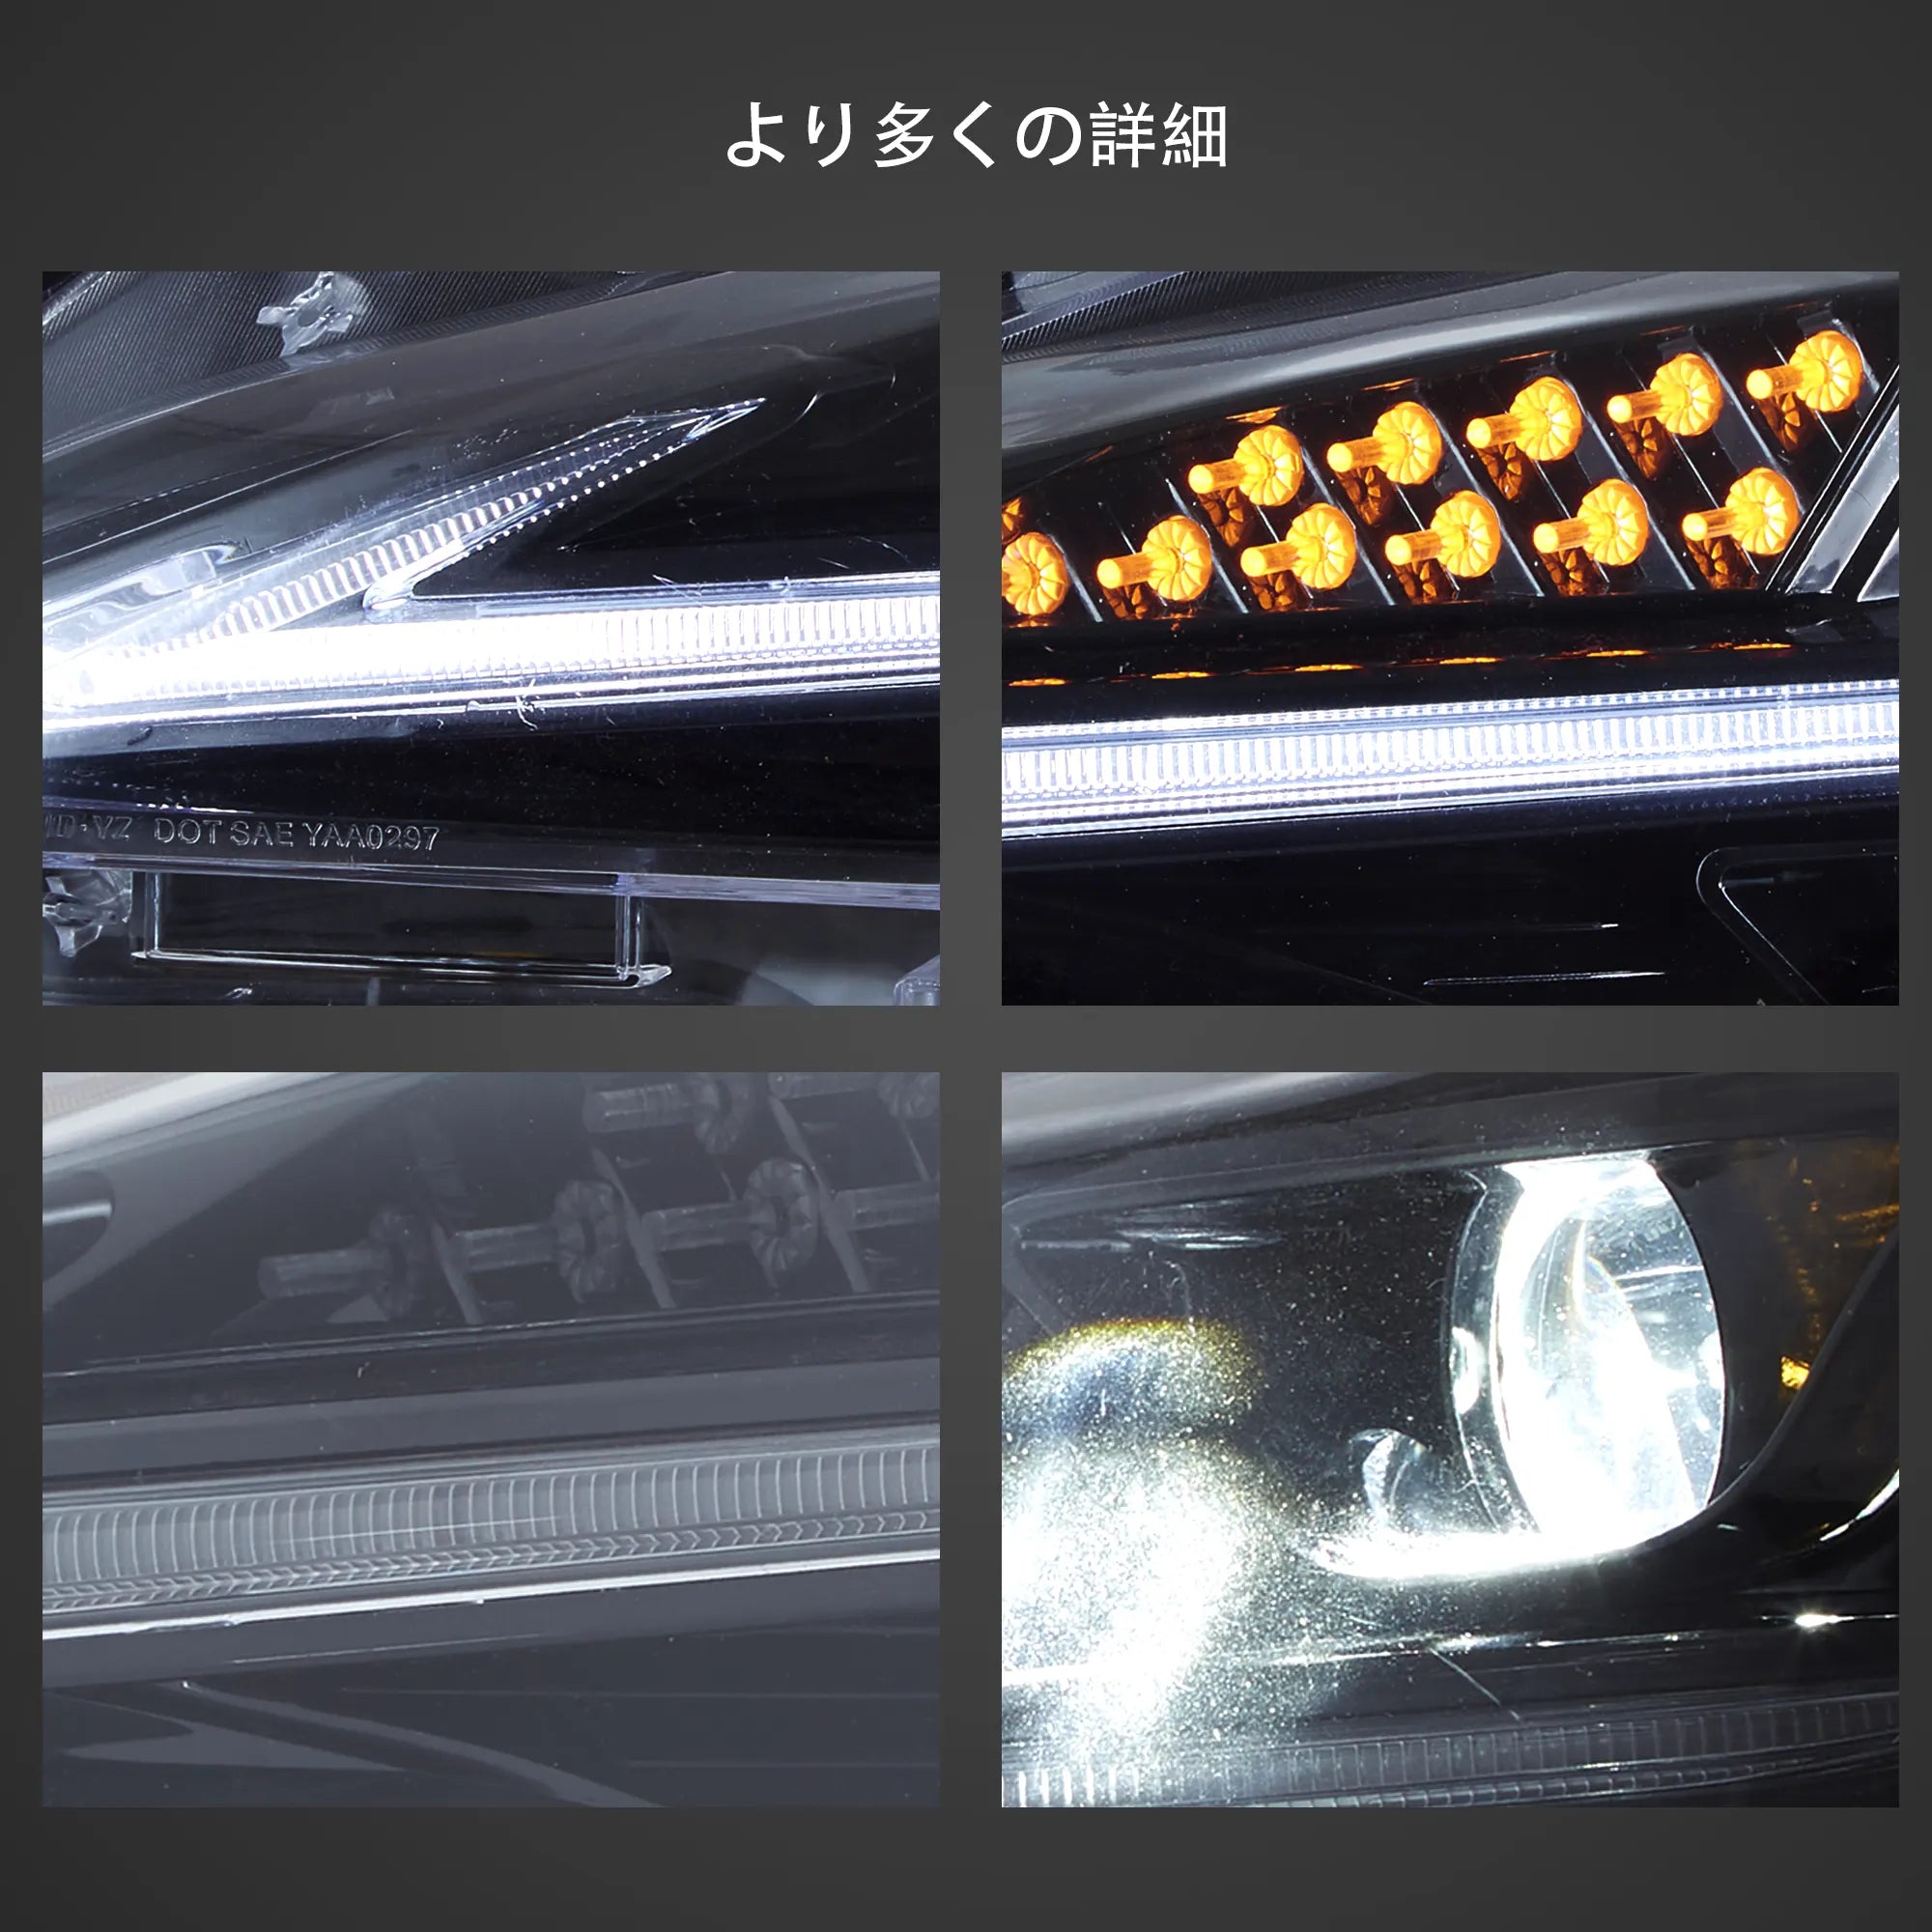 12-21 トヨタ 86 Vland ヘッドライト BRZ/ FRS/FT86 の新しい一見の高性能ライト